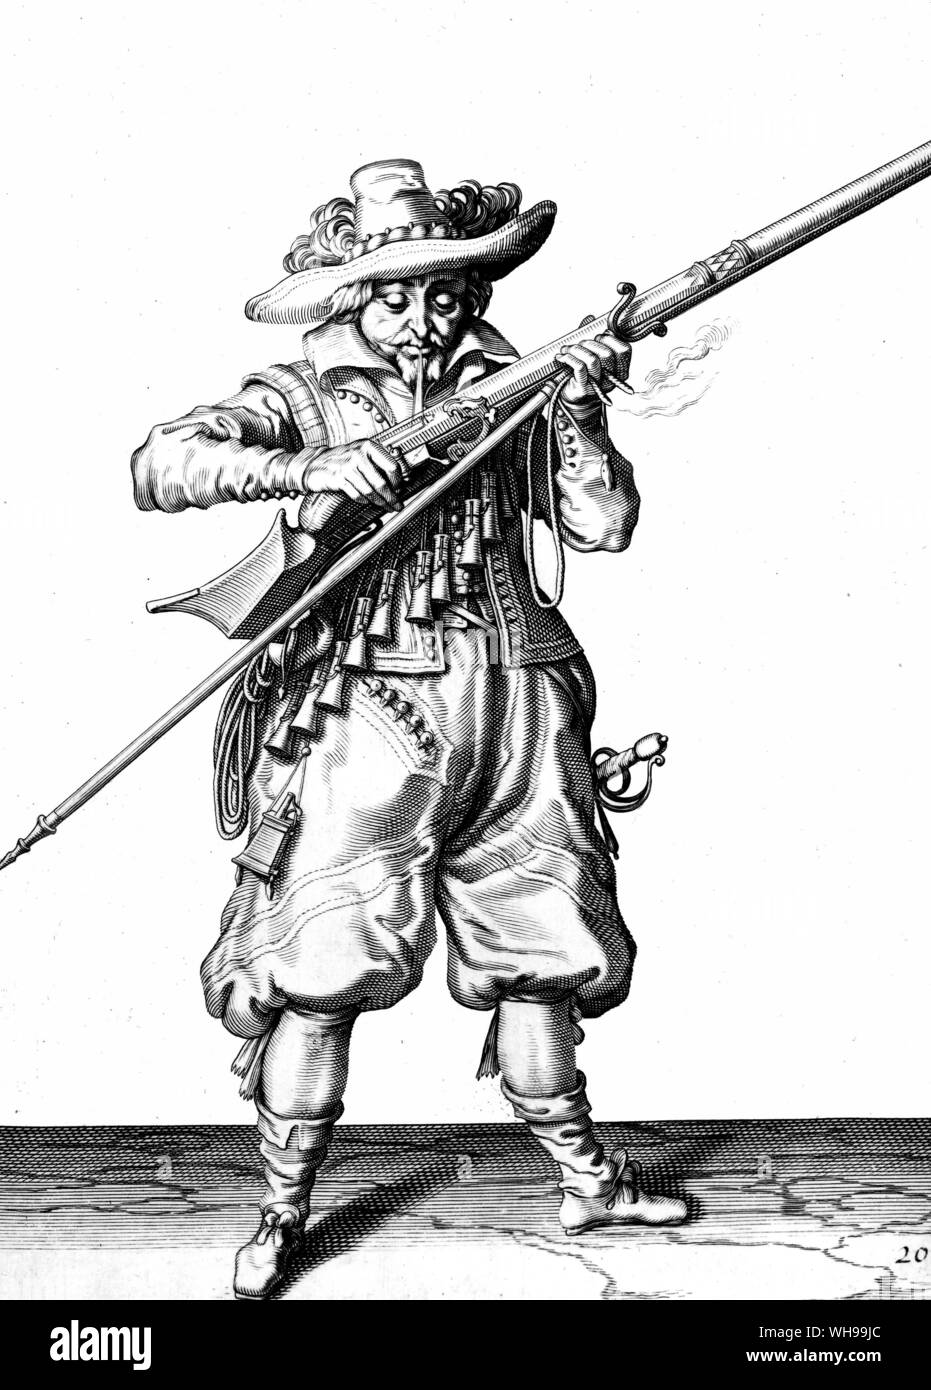 Kriegsführung/ein musketier aus dem frühen 17. Jahrhundert. Stockfoto